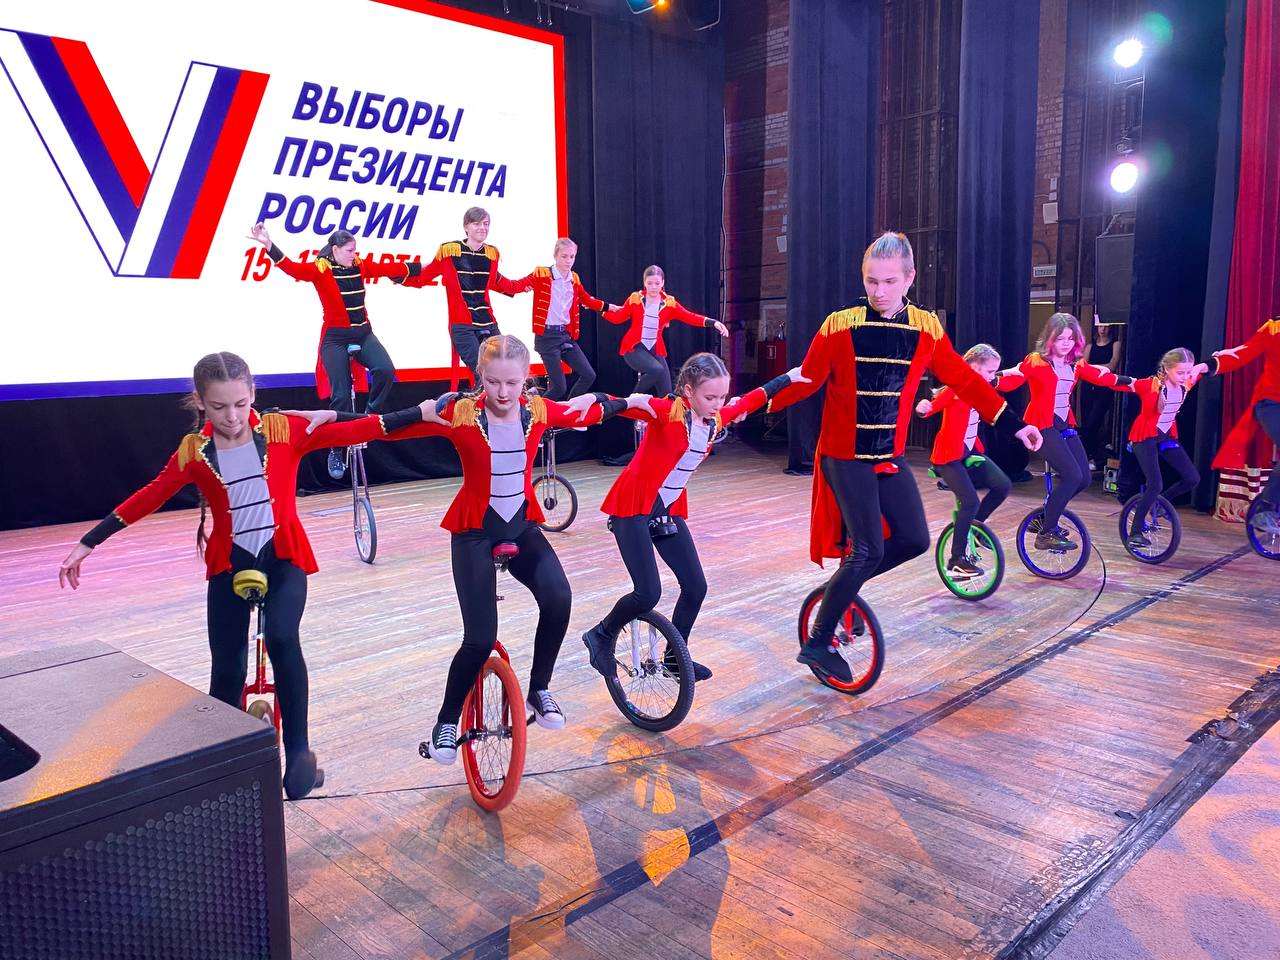 В первый день выборов Президента РФ в ЦДК имени М.И. Калинина проходит праздничный концерт